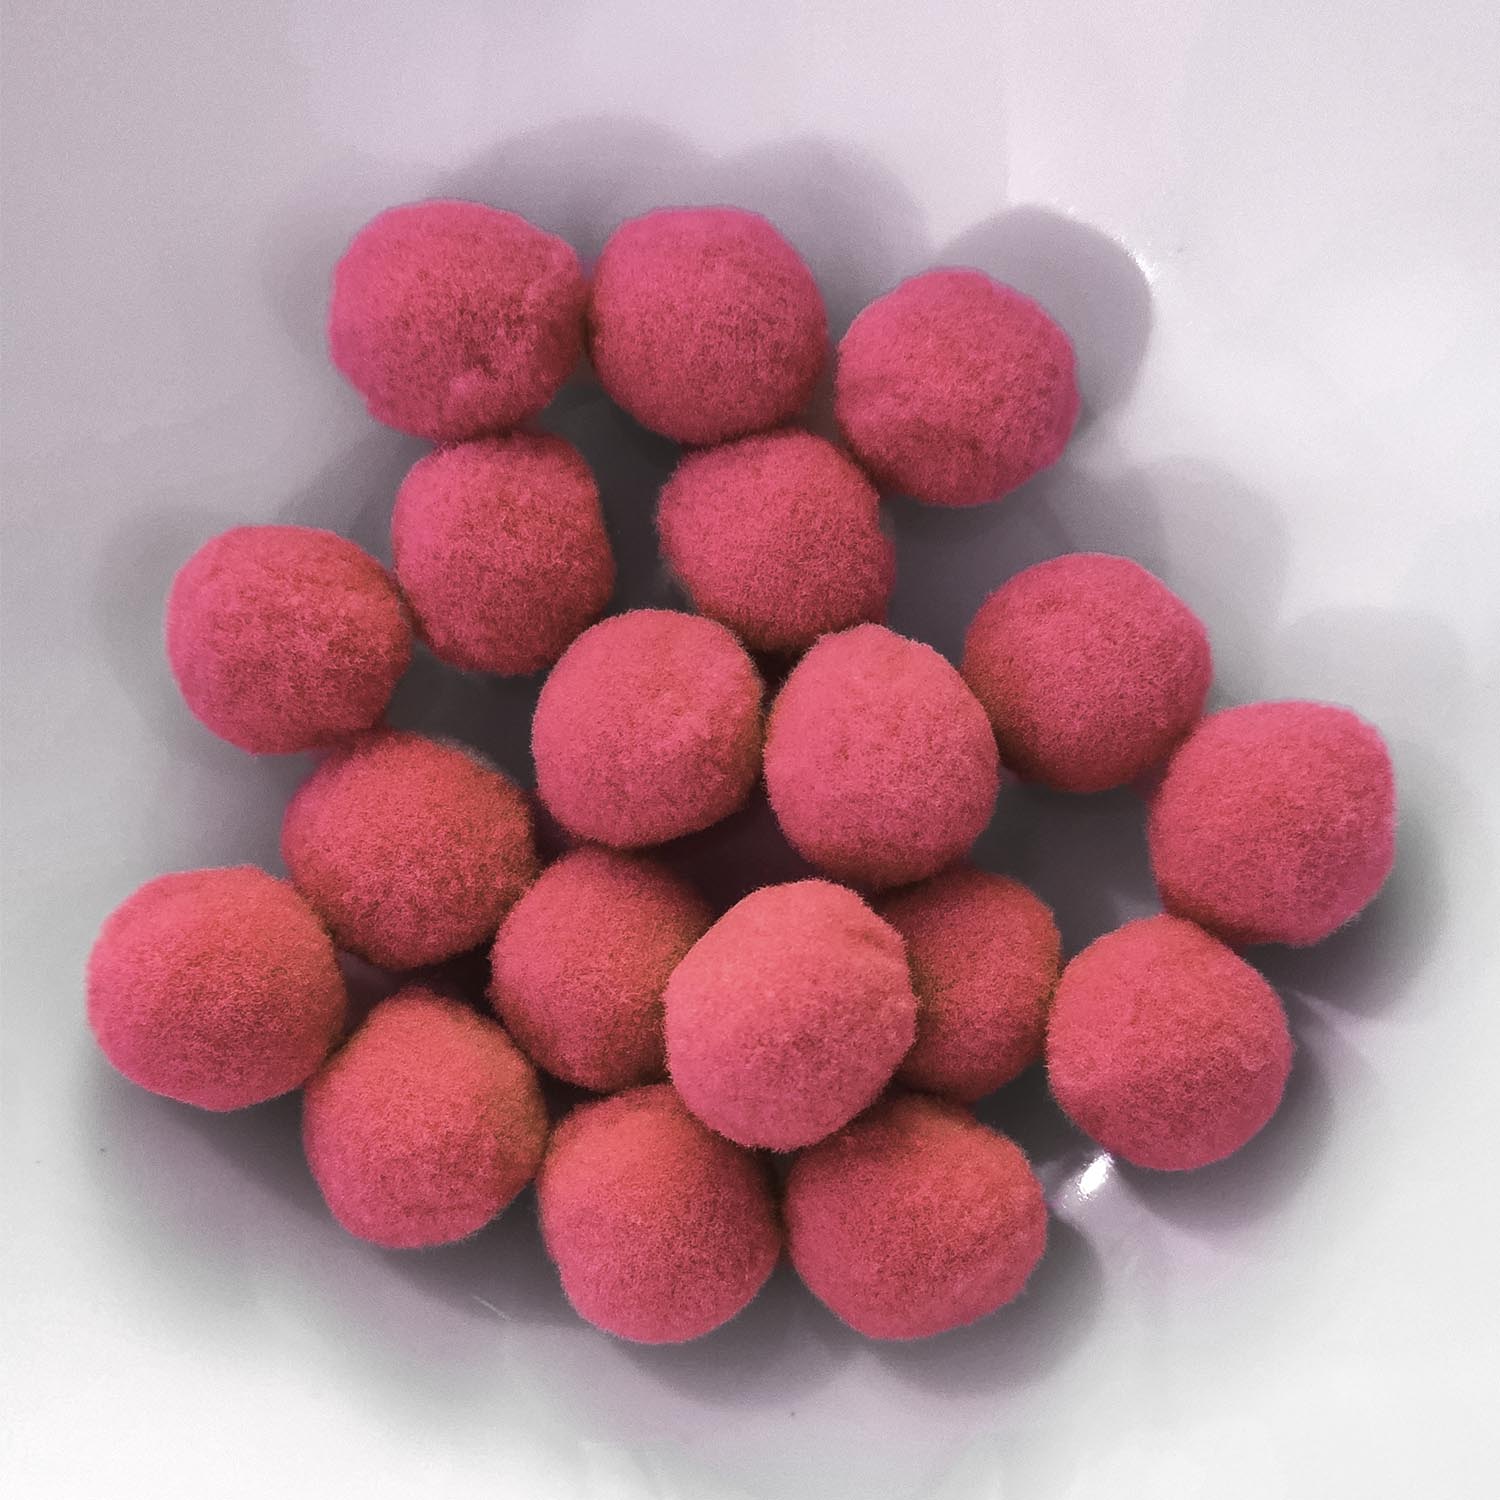 PomPon / Bälle aus Baumwolle - 12 mm / 40er Set - Rosa dunkel